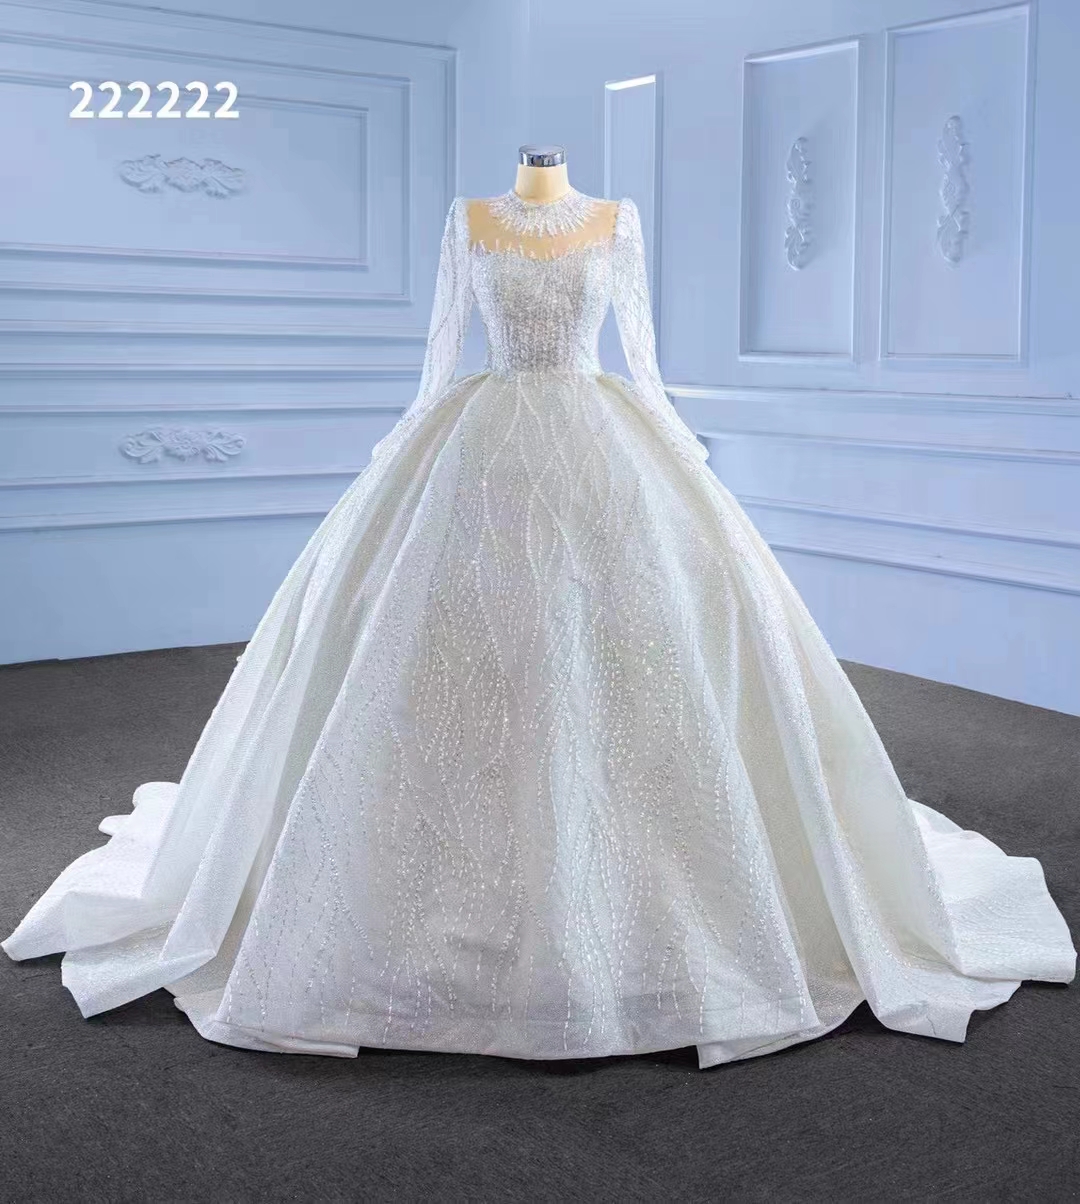 Vestido de novia de cuello alto blanco Camina larga Pearl Luxury Tulle Bride Handless Handwork SM222222